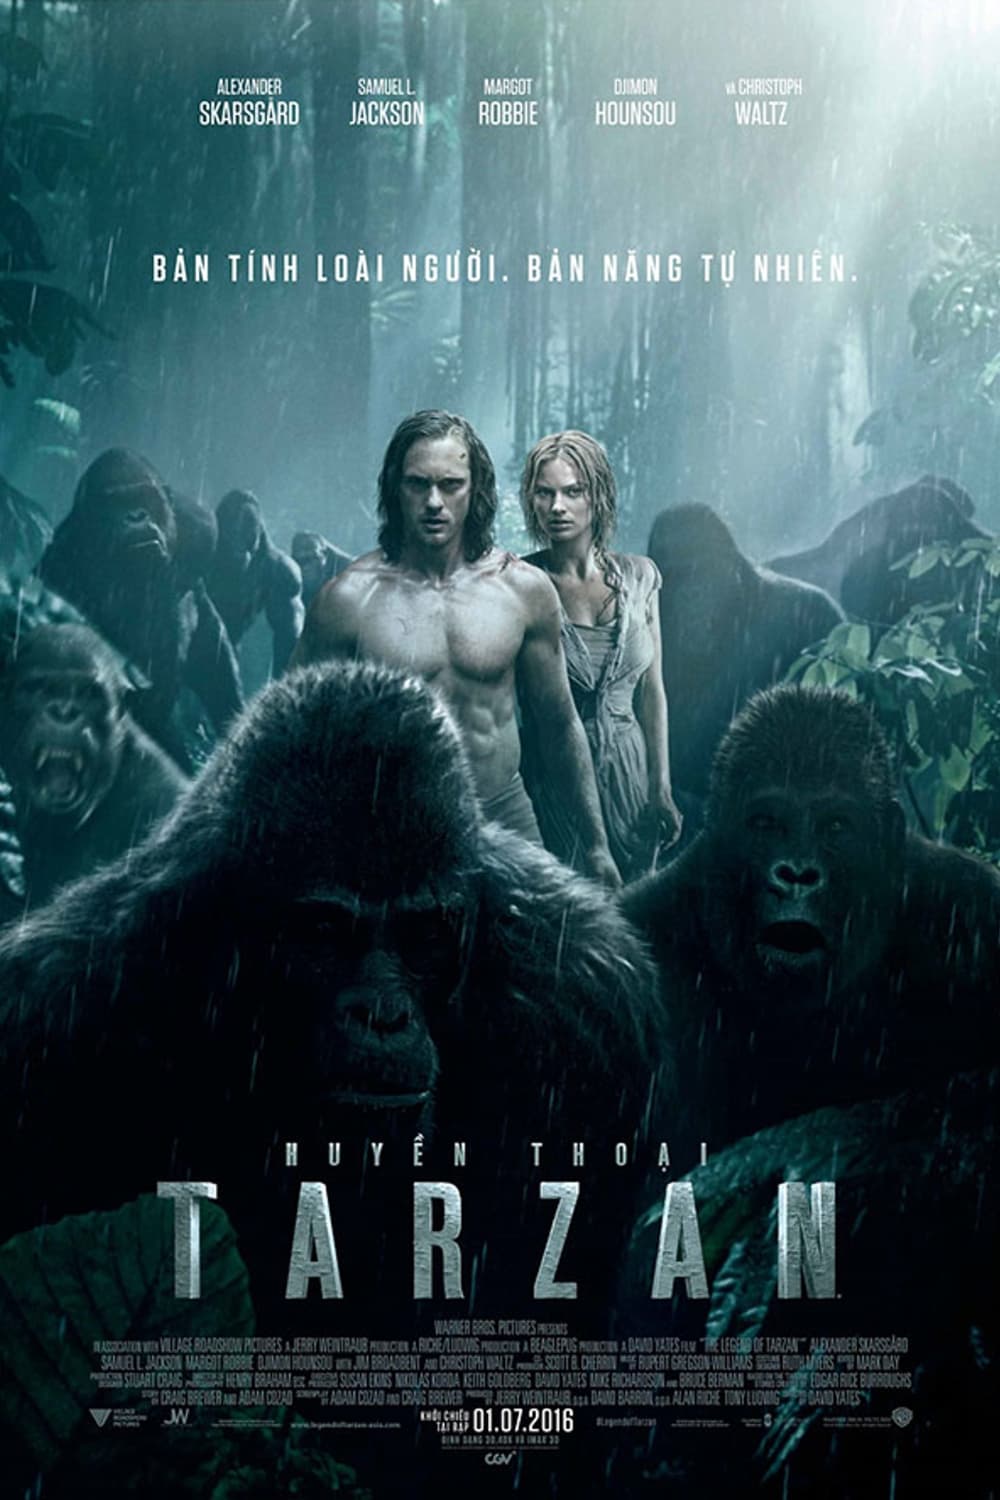 Huyền Thoại Tarzan (The Legend of Tarzan) [2016]